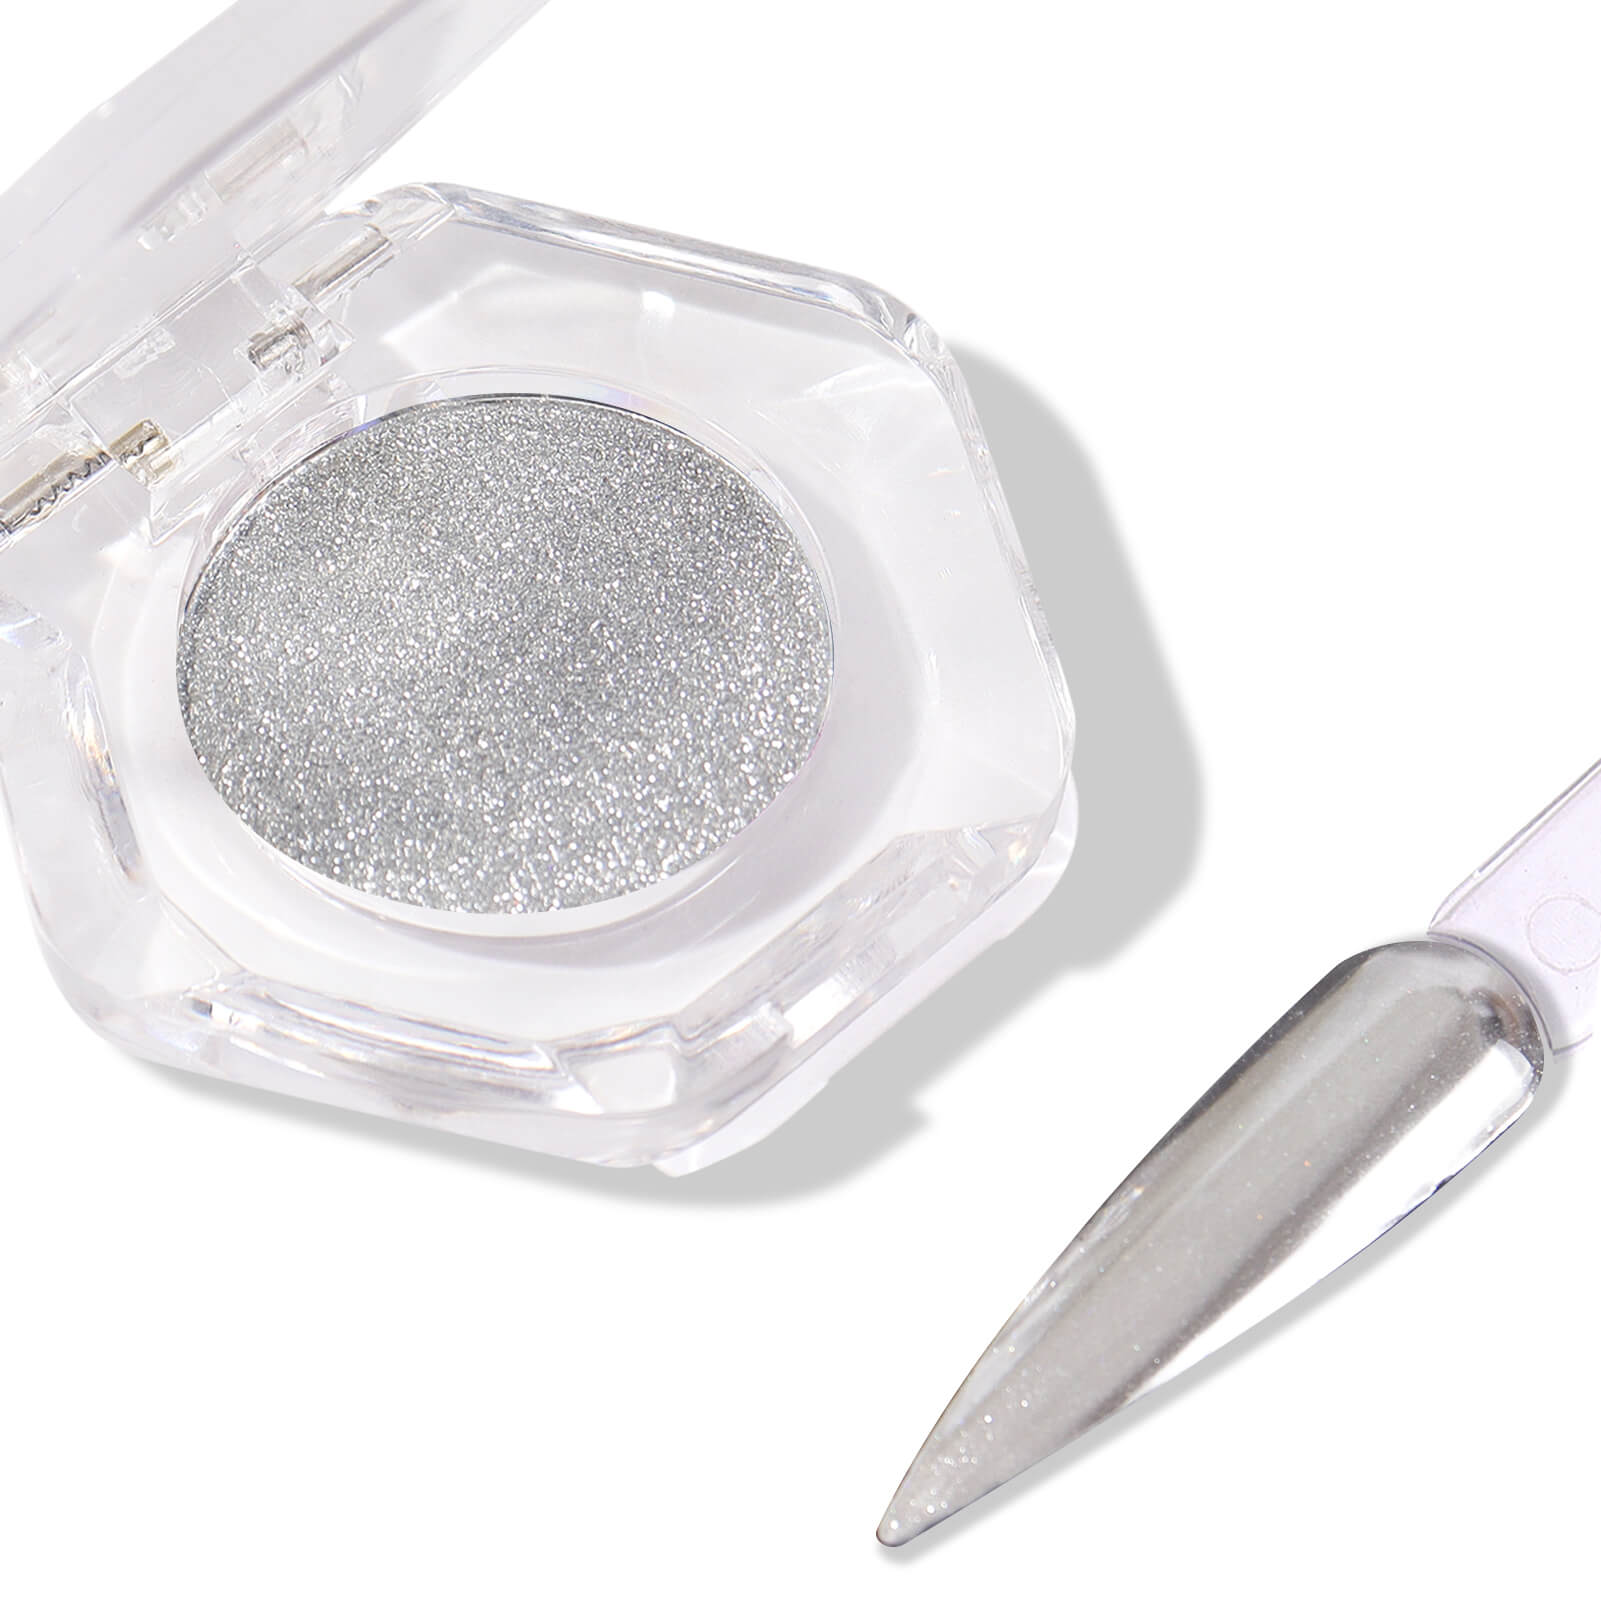 nail-art-chrome-powder-silver-mirror-nails